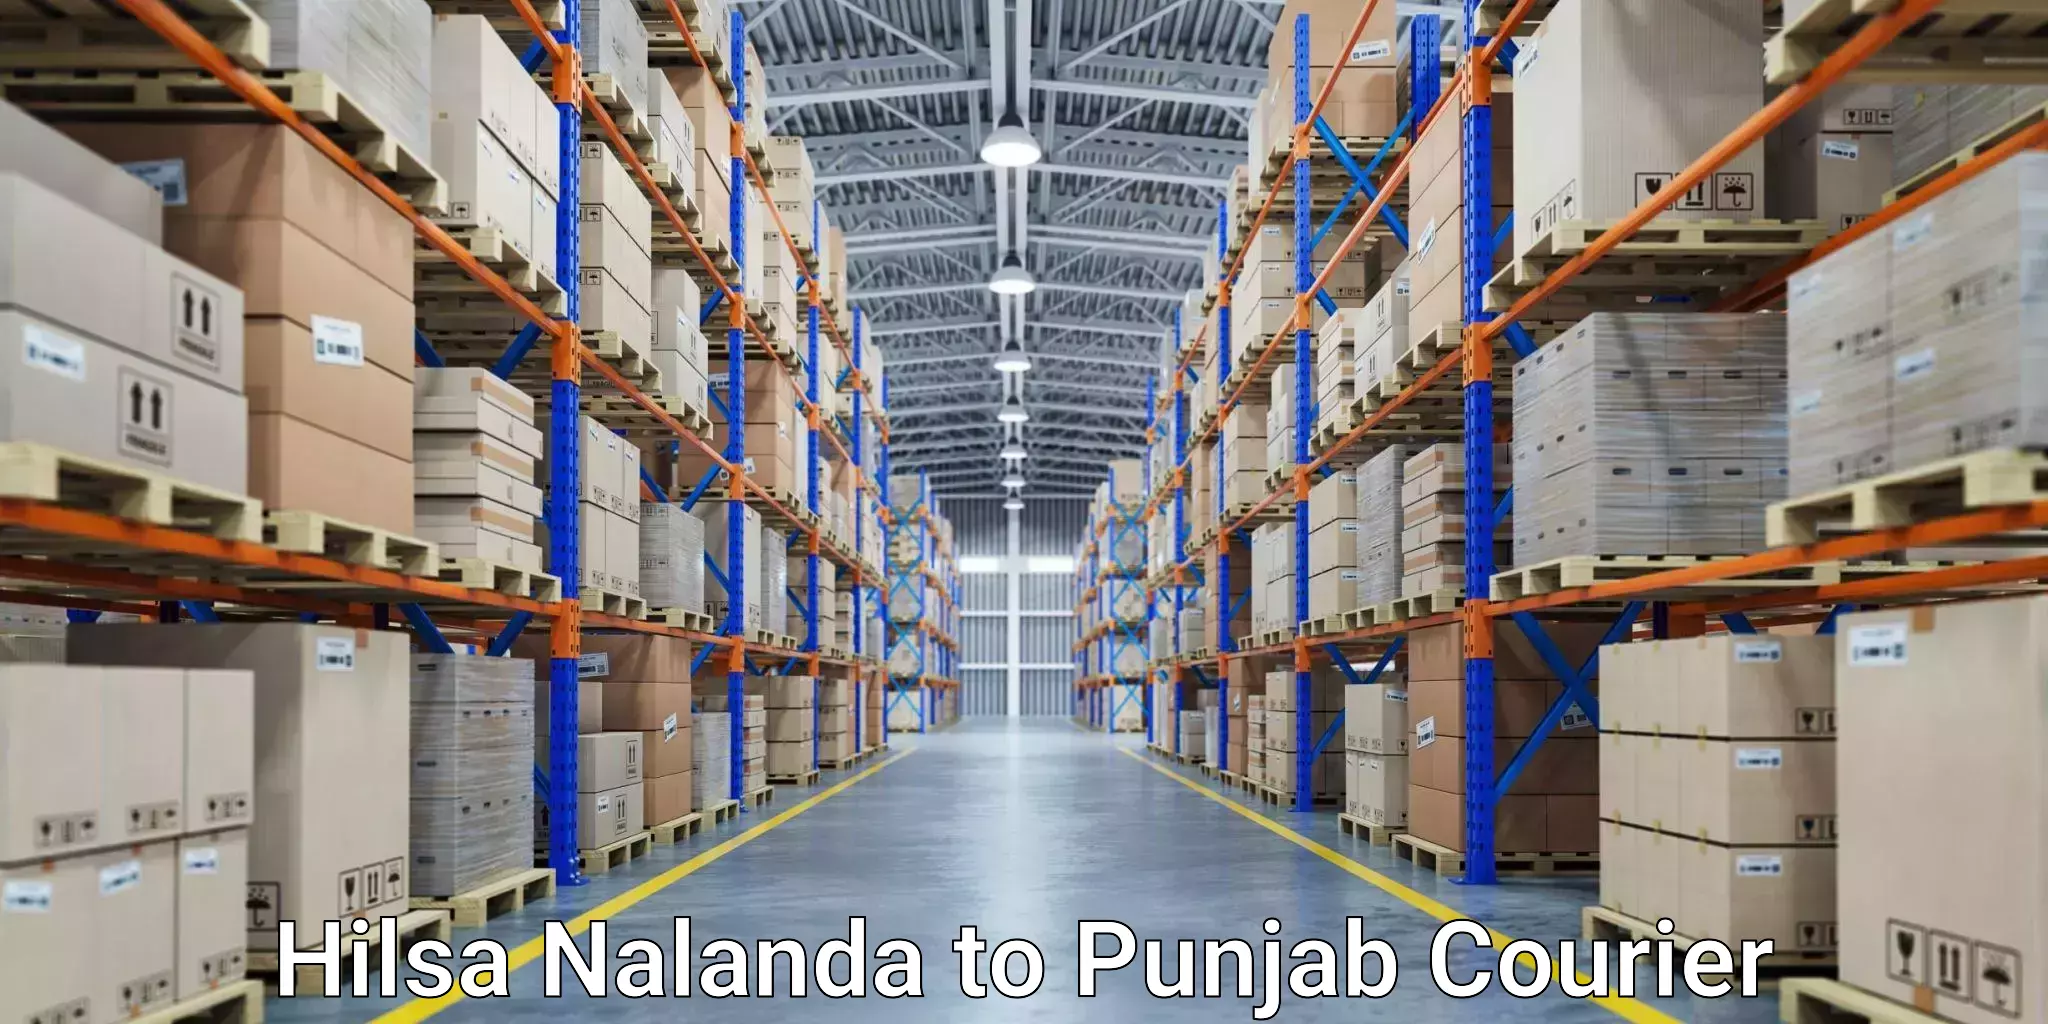 Express postal services Hilsa Nalanda to Punjab